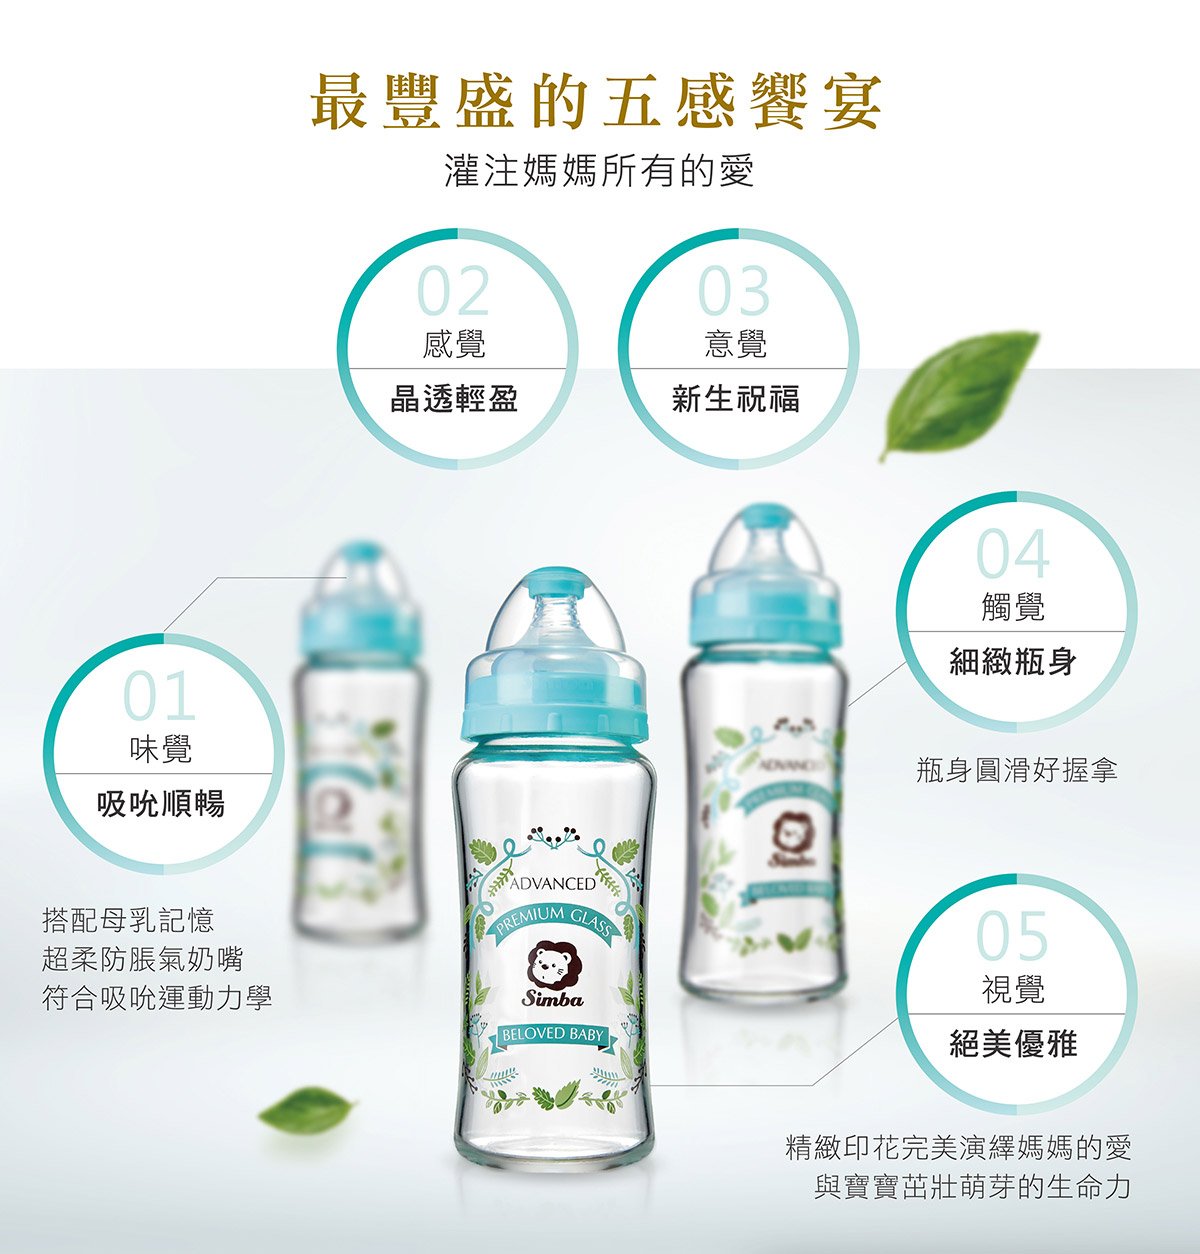 史上第一支台灣精品獎奶瓶得主，蘿蔓晶鑽玻璃奶瓶系列，嚴選600℃高品質耐熱玻璃原料，符合國家CNS、歐盟EN-14350、美國FDA品質規範標準，具耐酸鹼、耐瞬間溫差150℃以上的特性。以花草的生命力，顛覆奶瓶新風貌，完美演繹寶寶茁壯萌芽的生命力，給寶貝一場實用與美型兼具的五感饗宴。